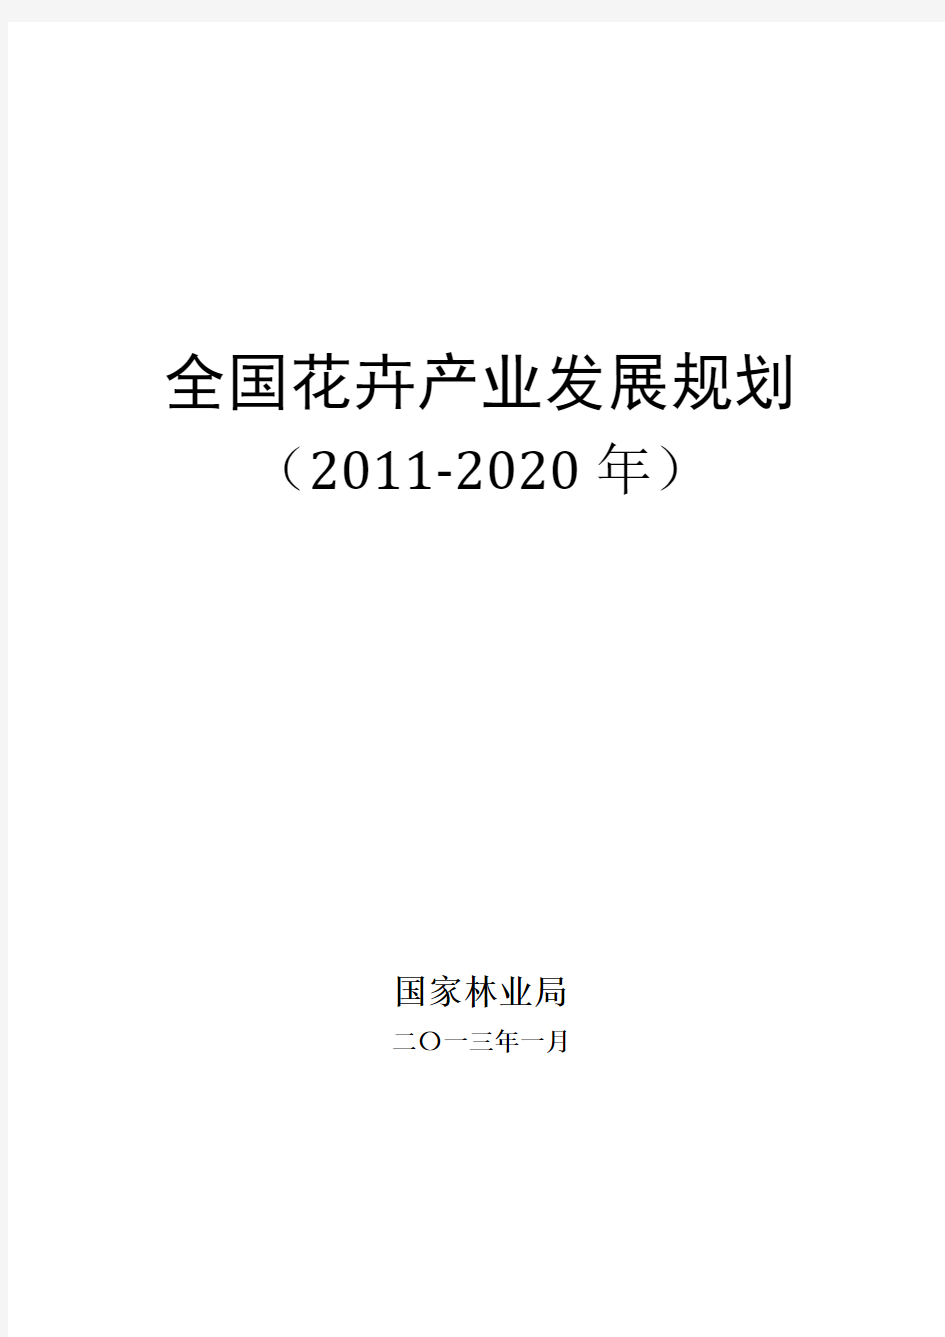 花卉产业发展纲要2011-2020